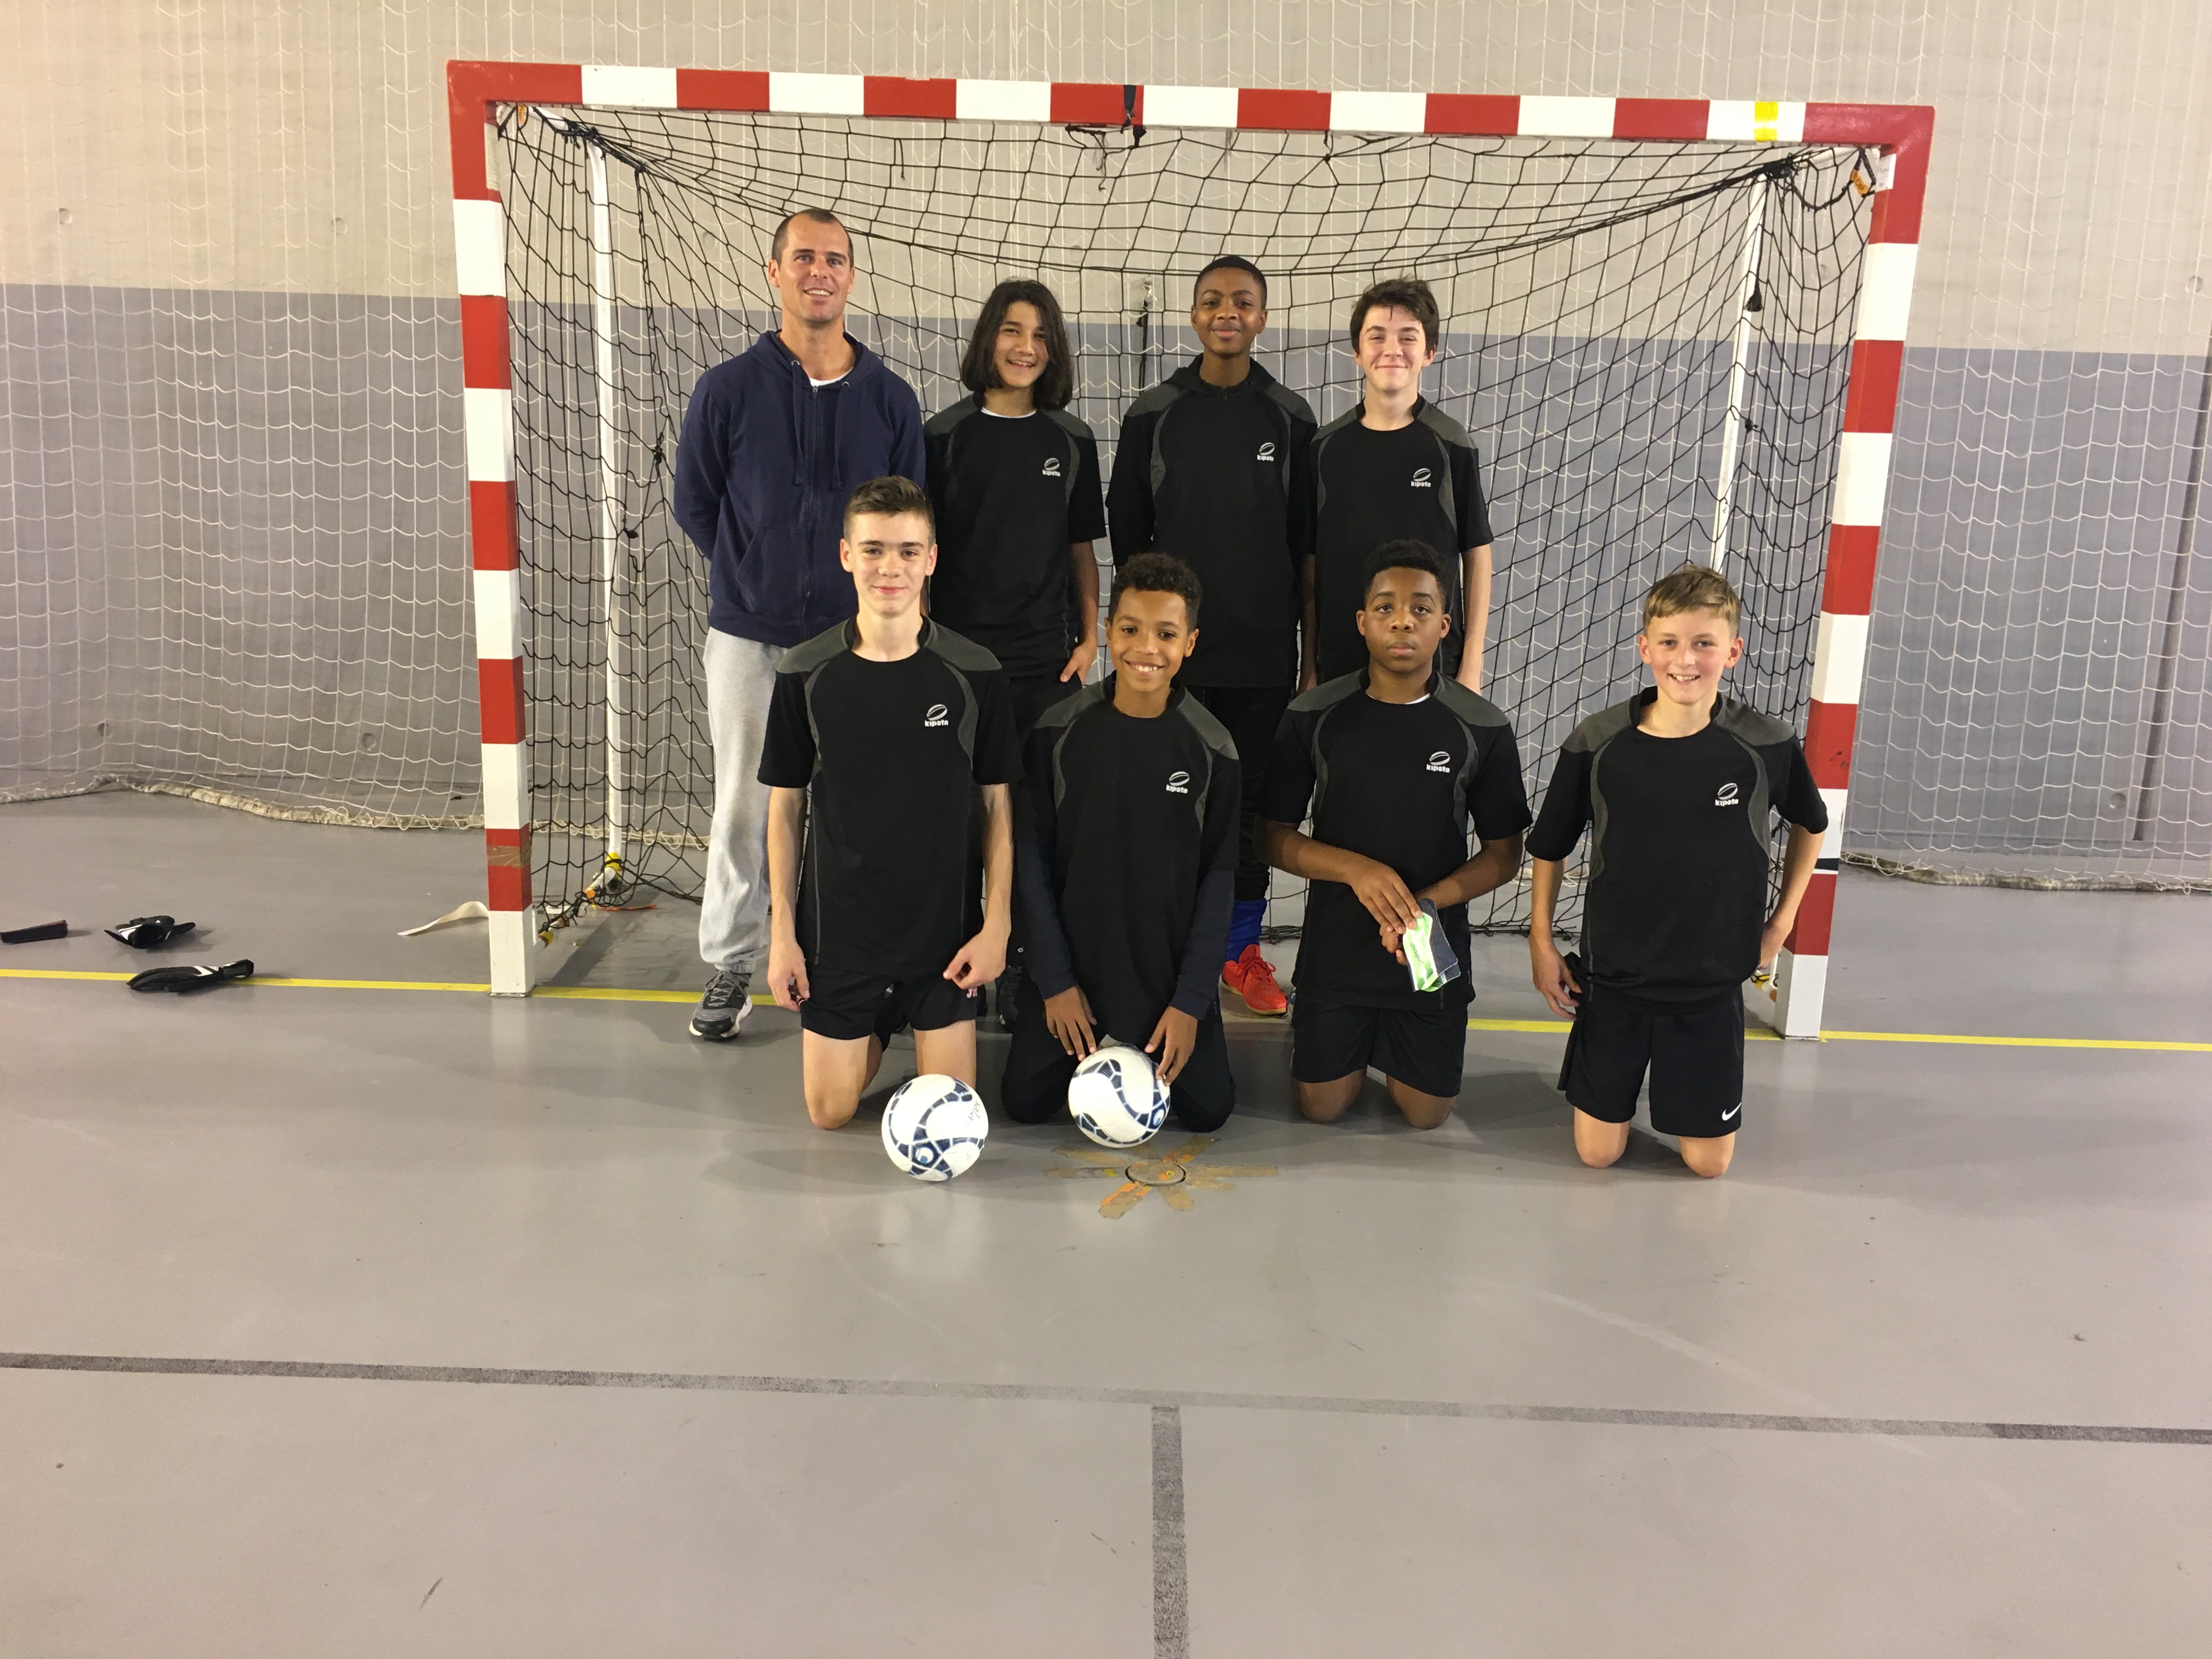 Visuel : Félicitation à nos joueurs AS Futsal 